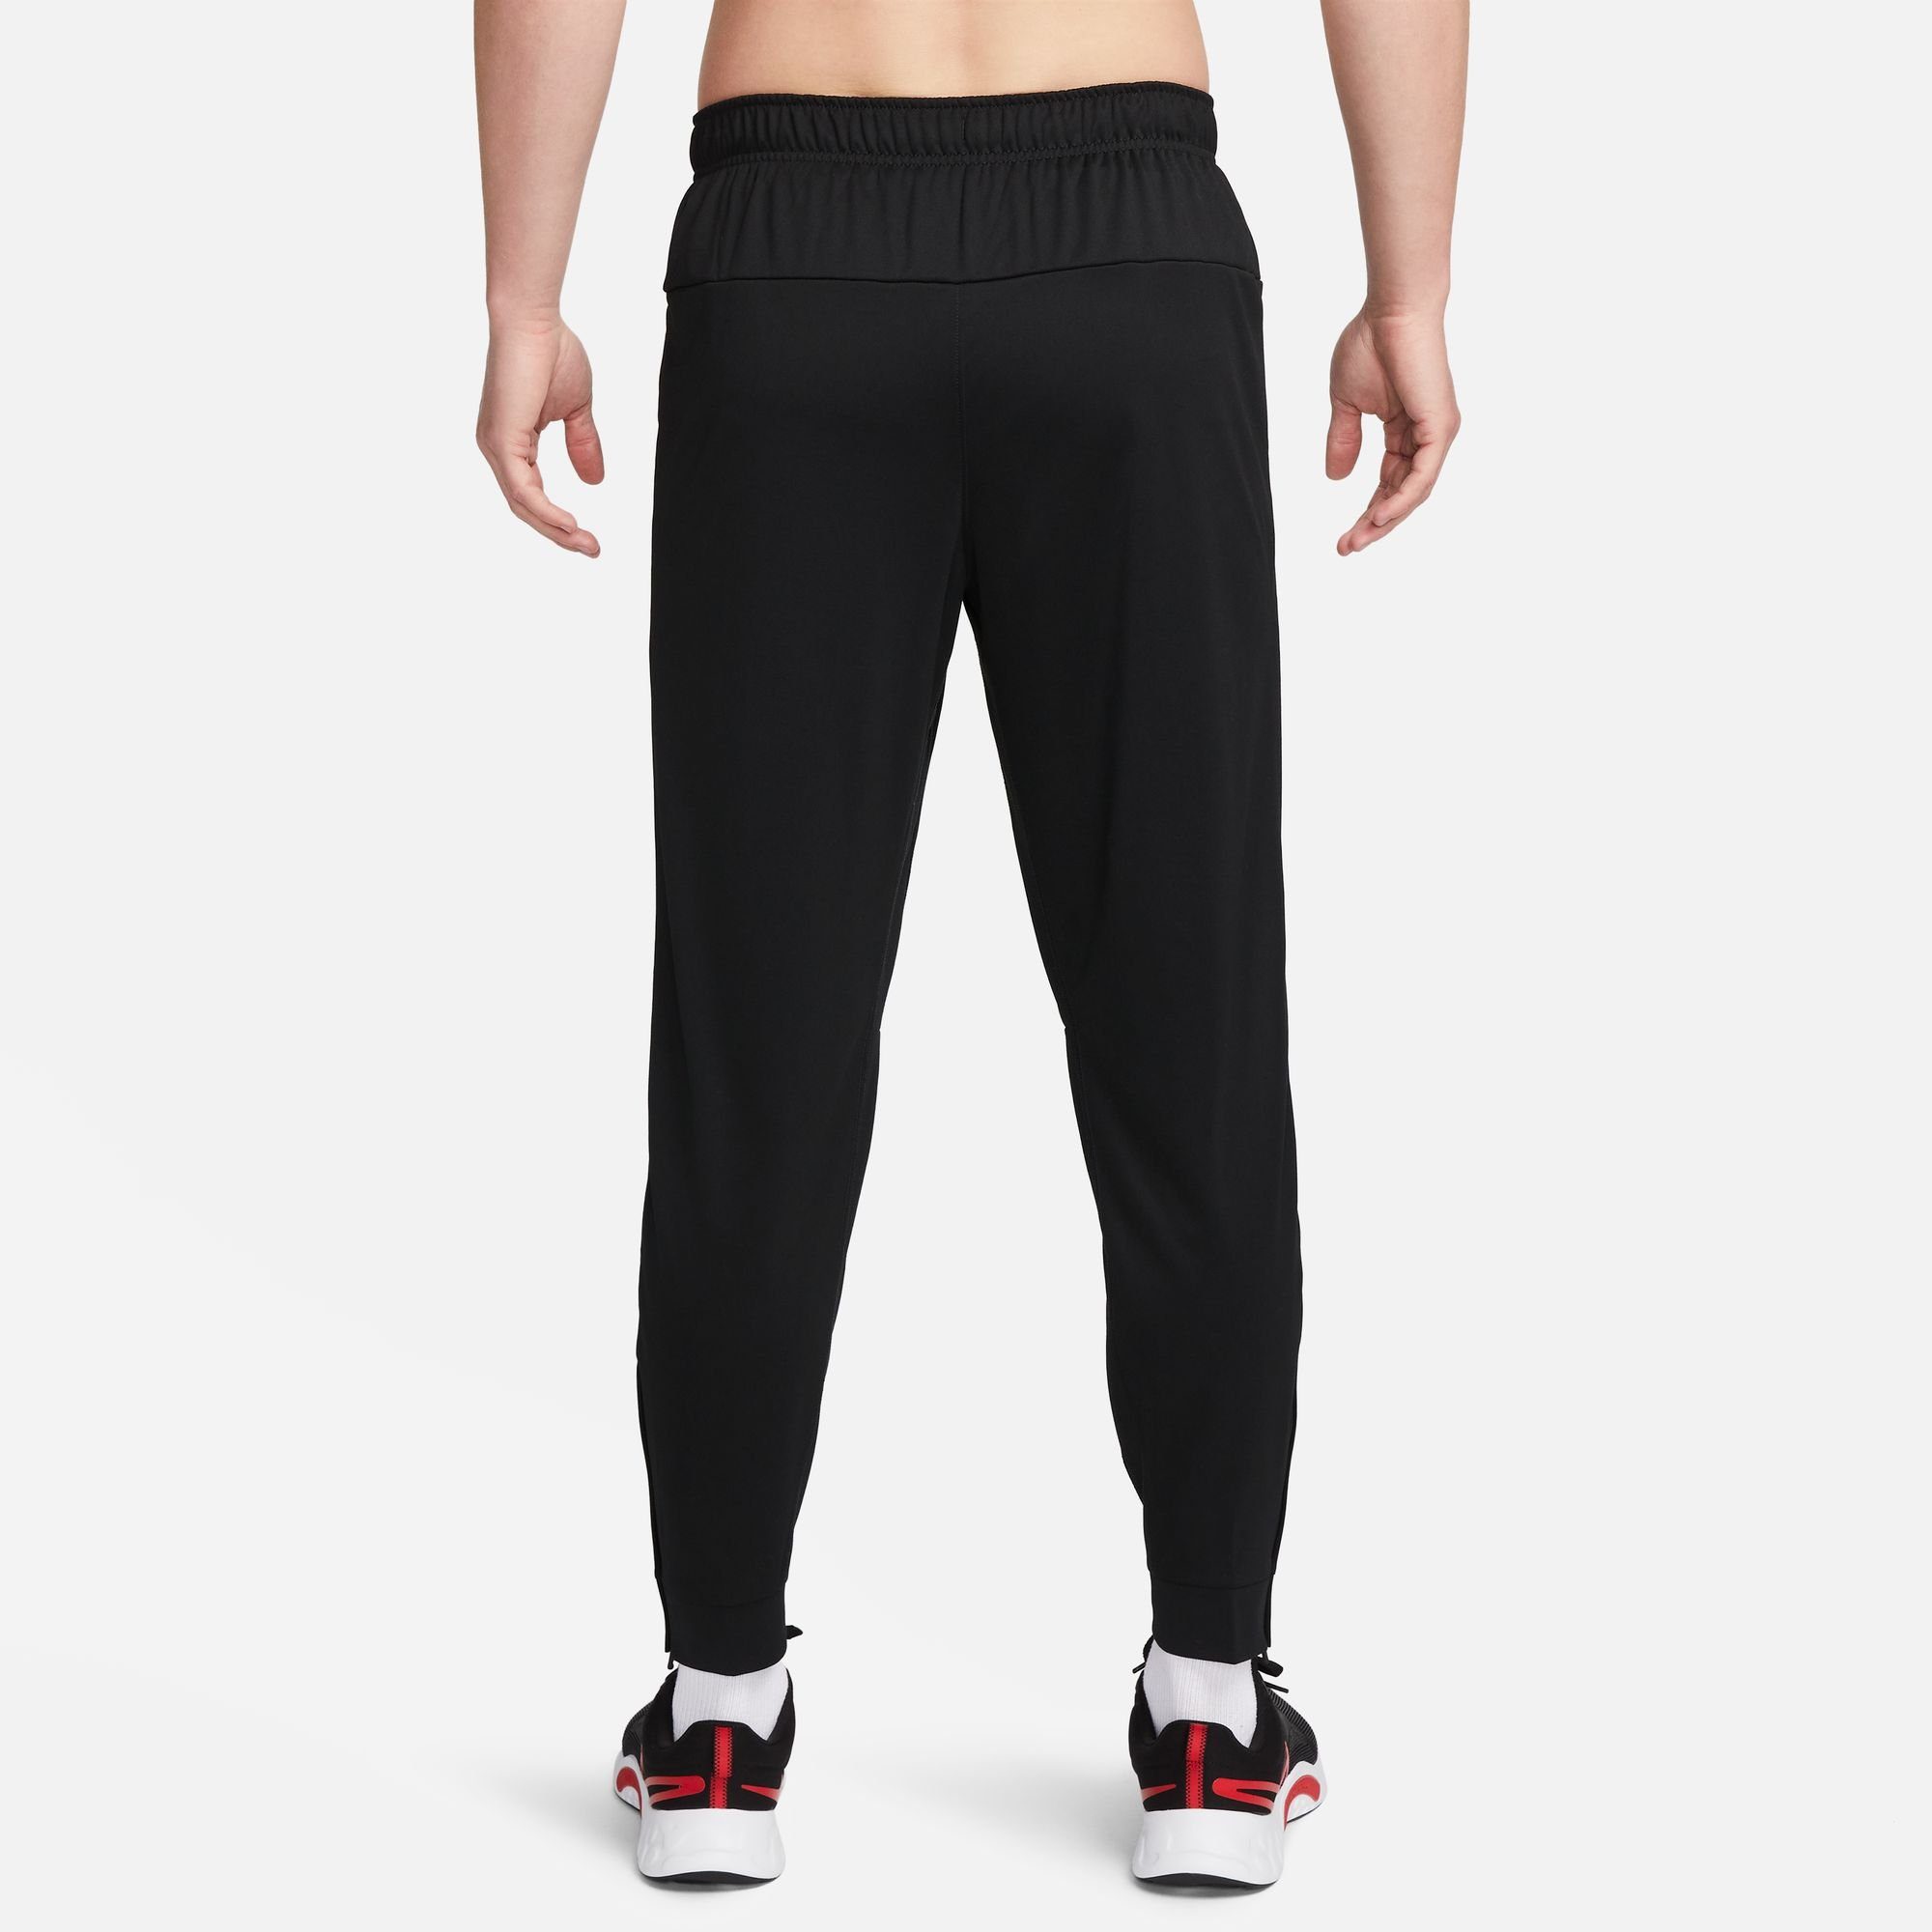 DRI-FIT PANTS TOTALITY FITNESS MEN'S Nike Trainingshose BLACK/WHITE TAPERED